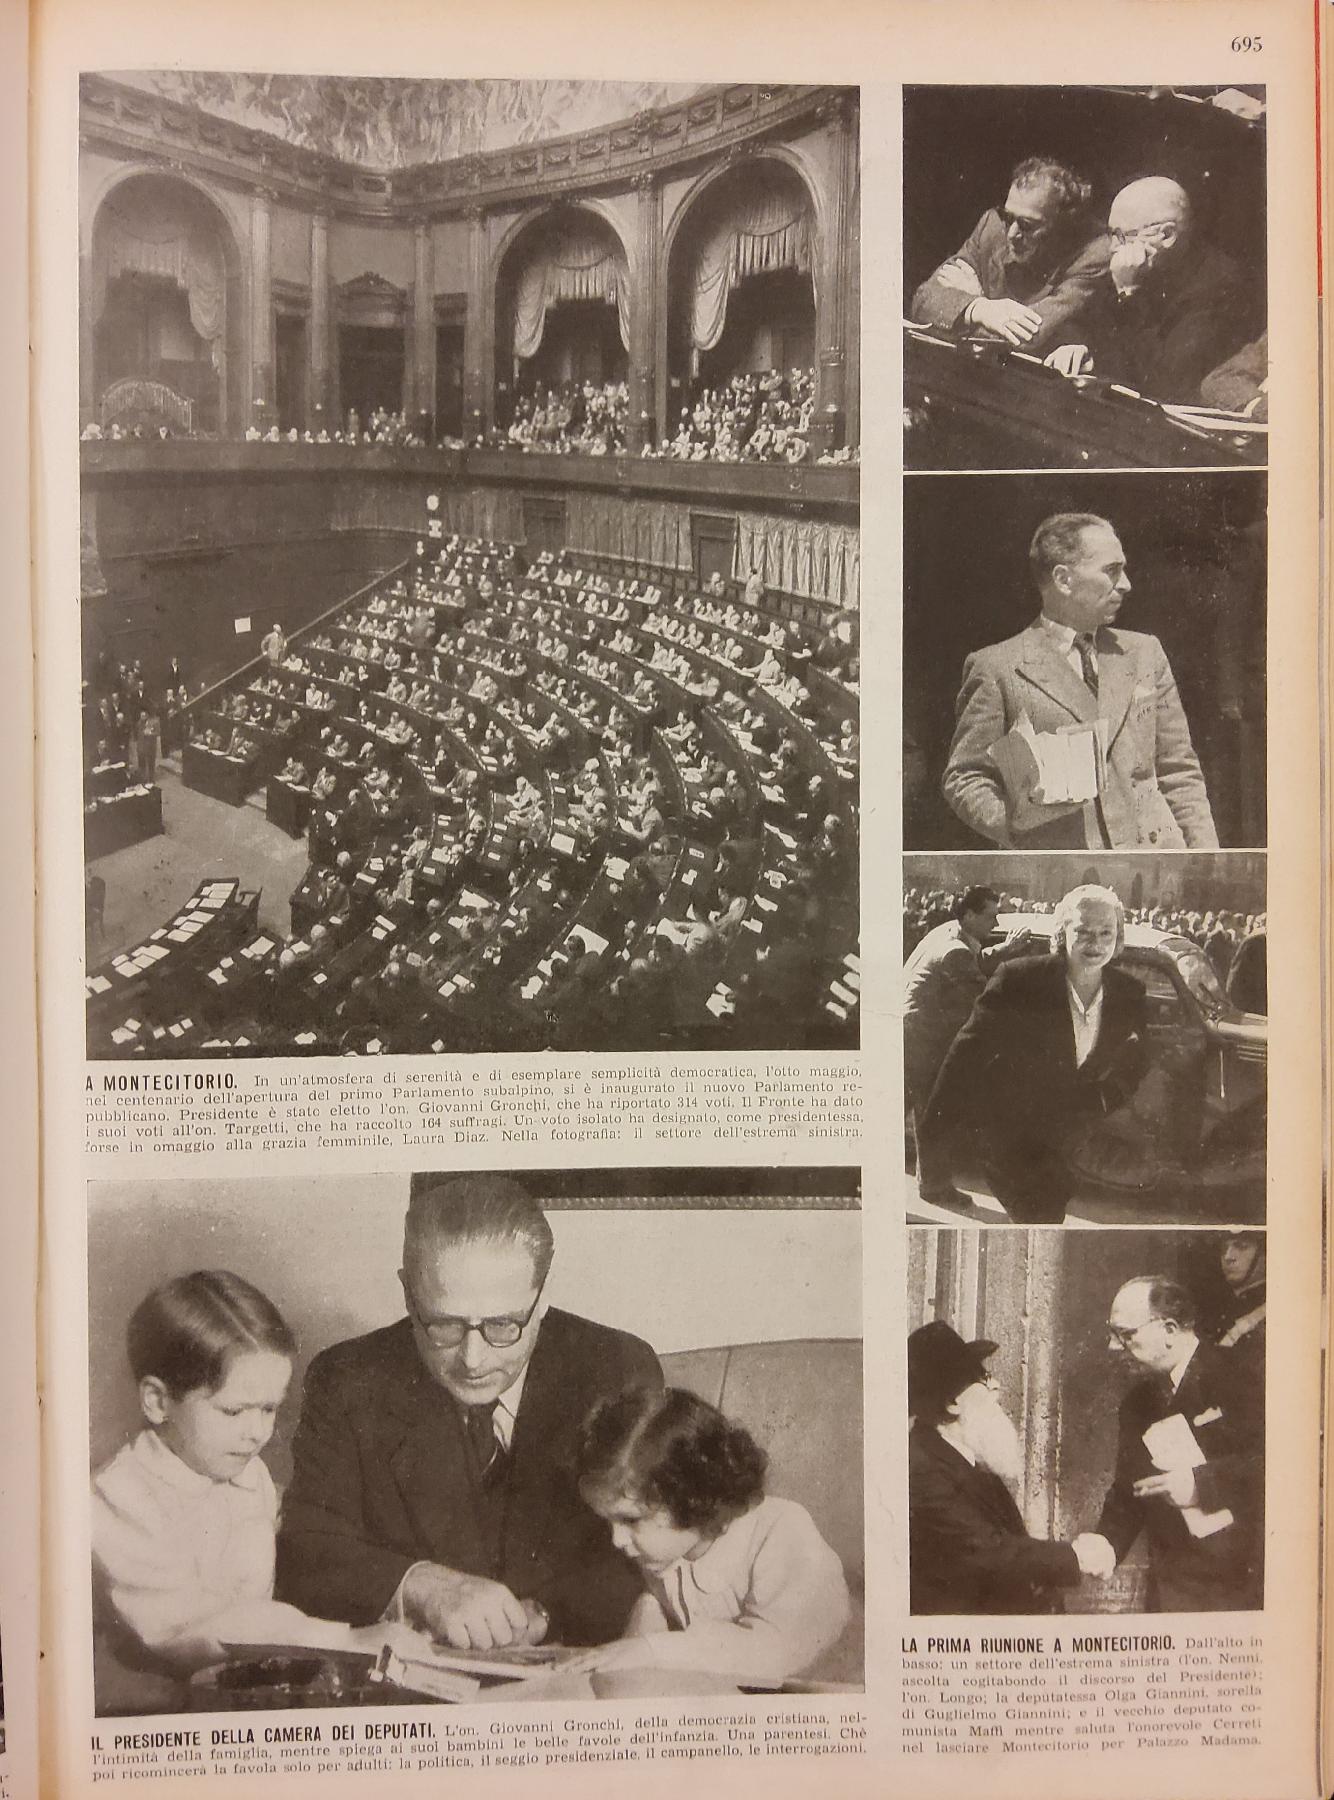 16 maggio 1948 - Pagina della rivista settimanale "L'Illustrazione Italiana".